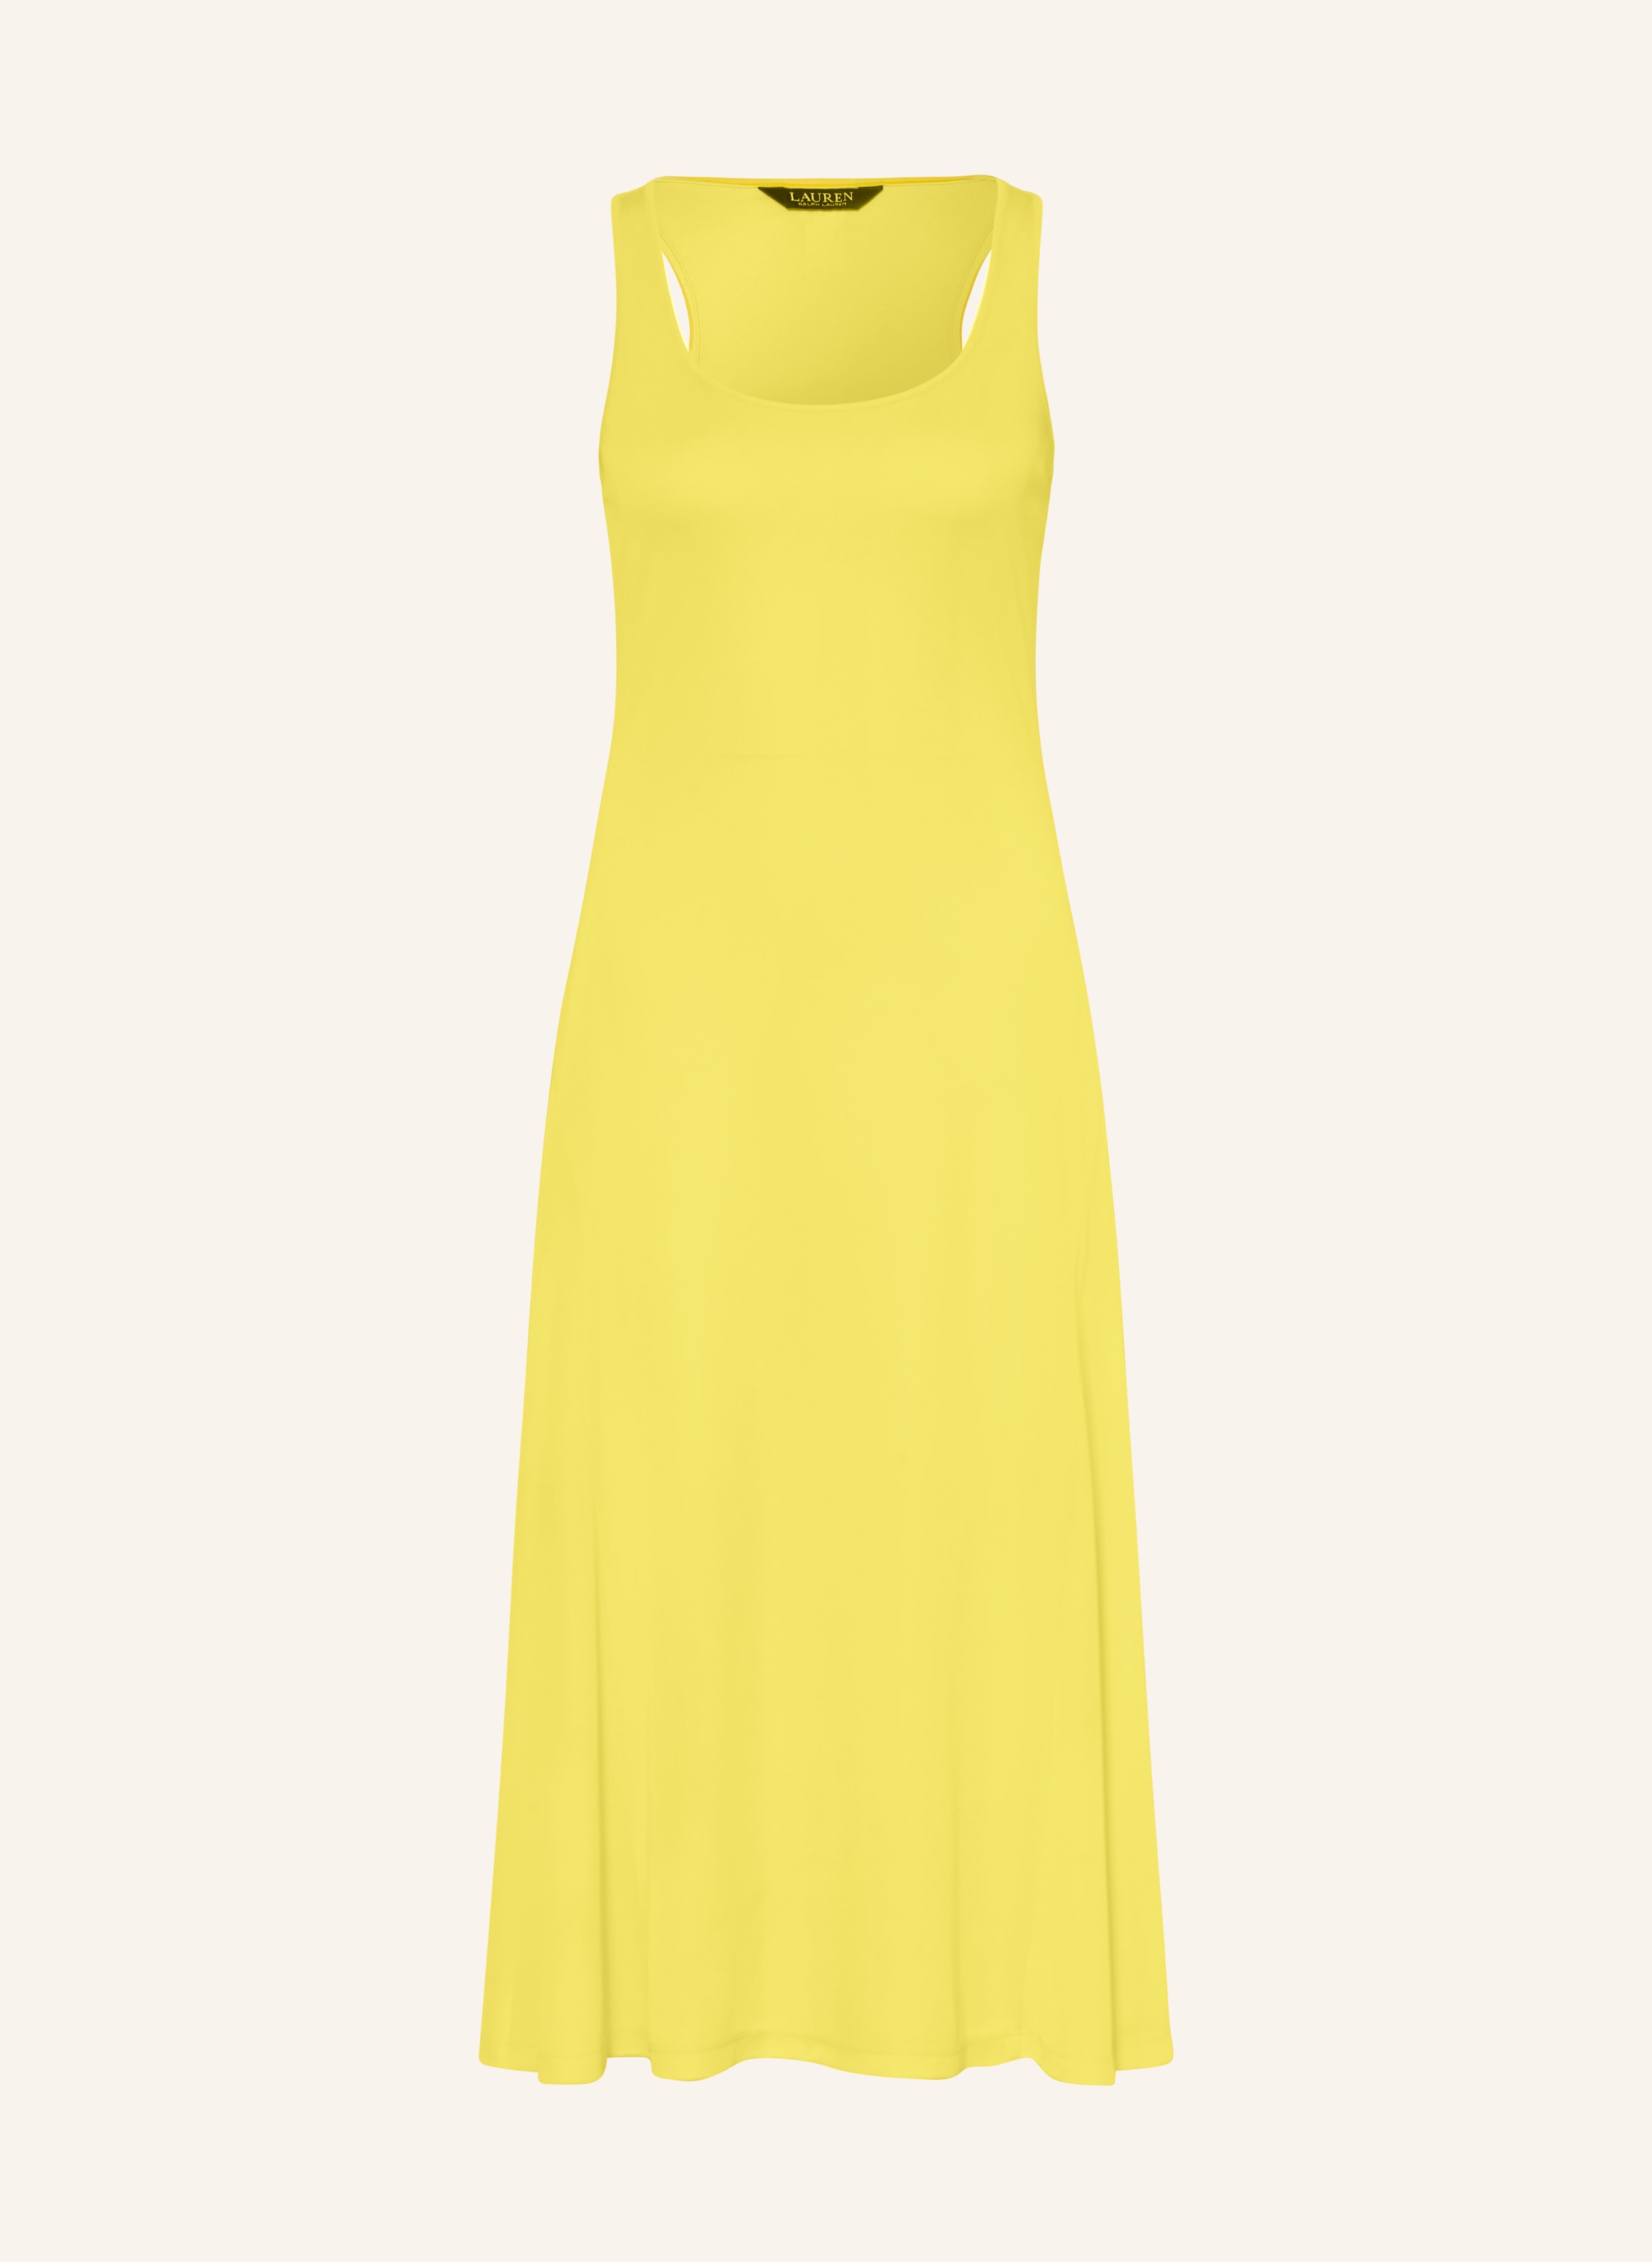 Imfashini Women A-line Yellow Dress - Buy Imfashini Women A-line Yellow  Dress Online at Best Prices in India | Flipkart.com